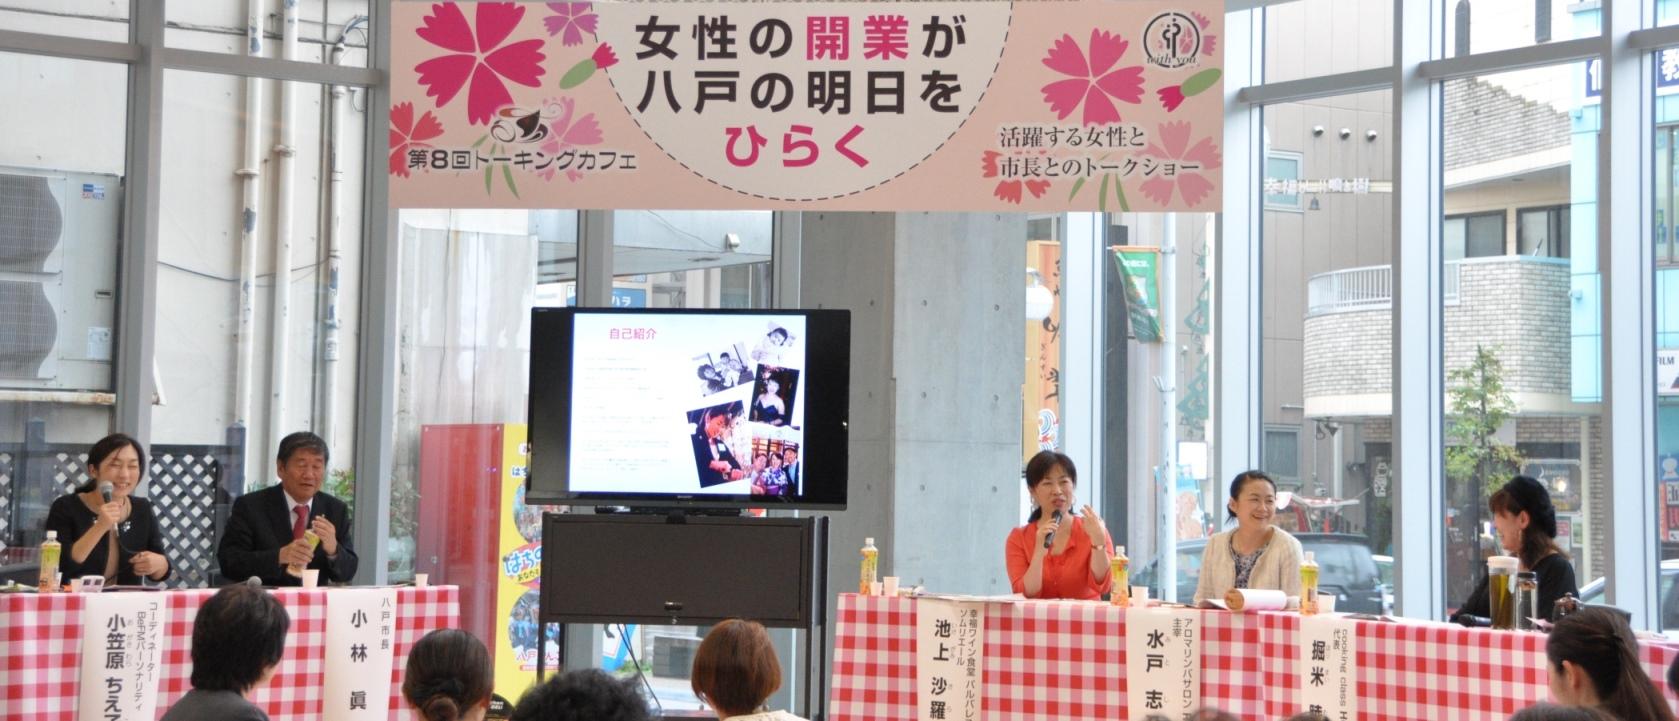 八戸ポータルミュージアム「はっち」の「トーキングカフェ」会場で、女性チャレンジ講座「女子力向上ぜみなーる」の修了生で、お店を開業し活躍されている女性達と市長とが意見交換をしている様子の写真